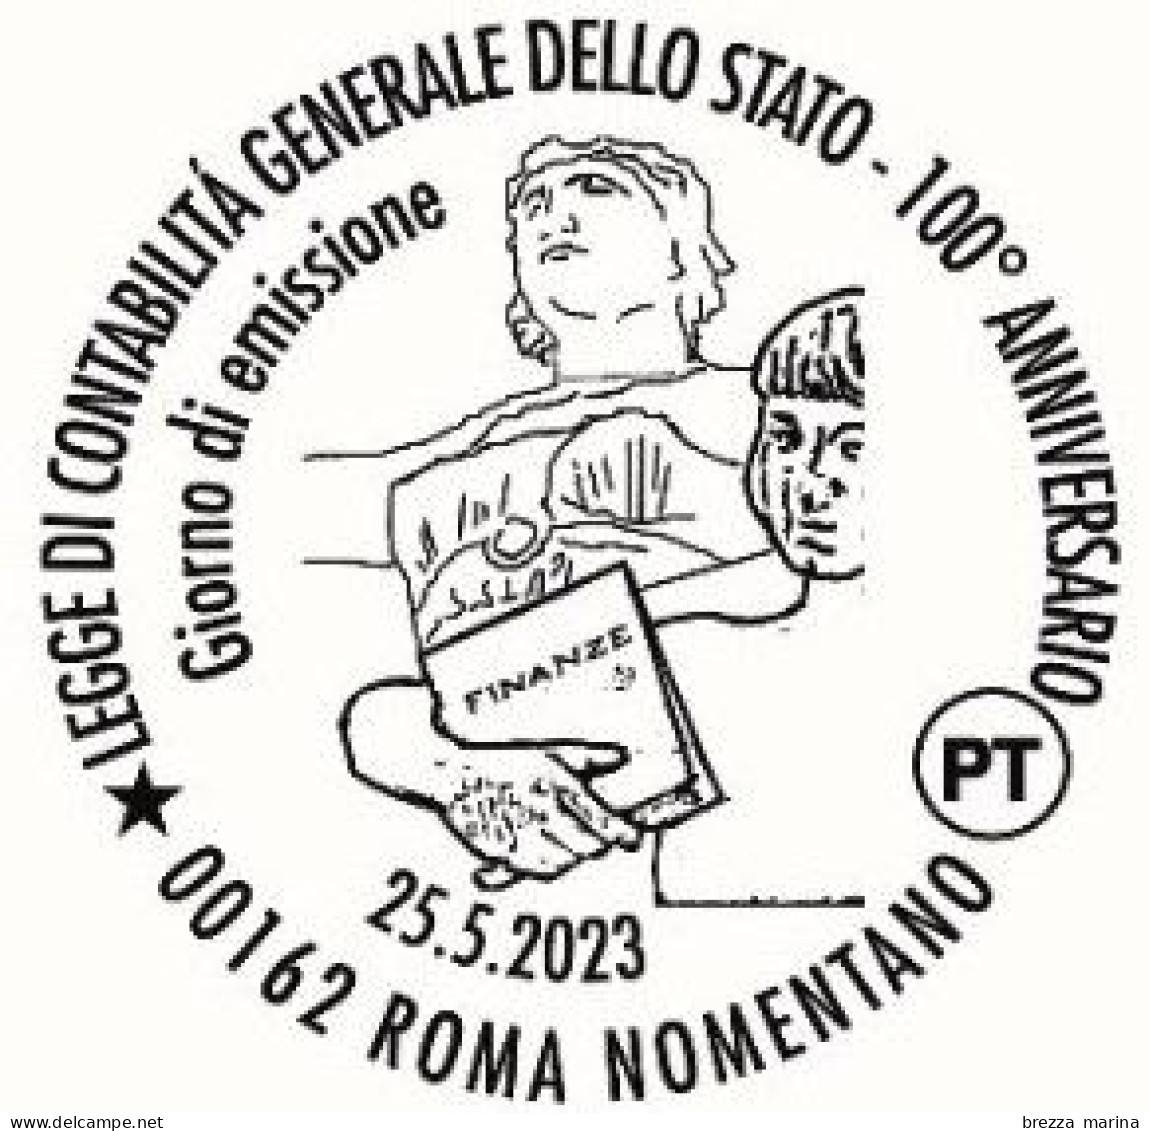 ITALIA - Usato - 2023 - 100 Anni Della Legge Di Contabilità Generale Dello Stato - B - 2021-...: Gebraucht